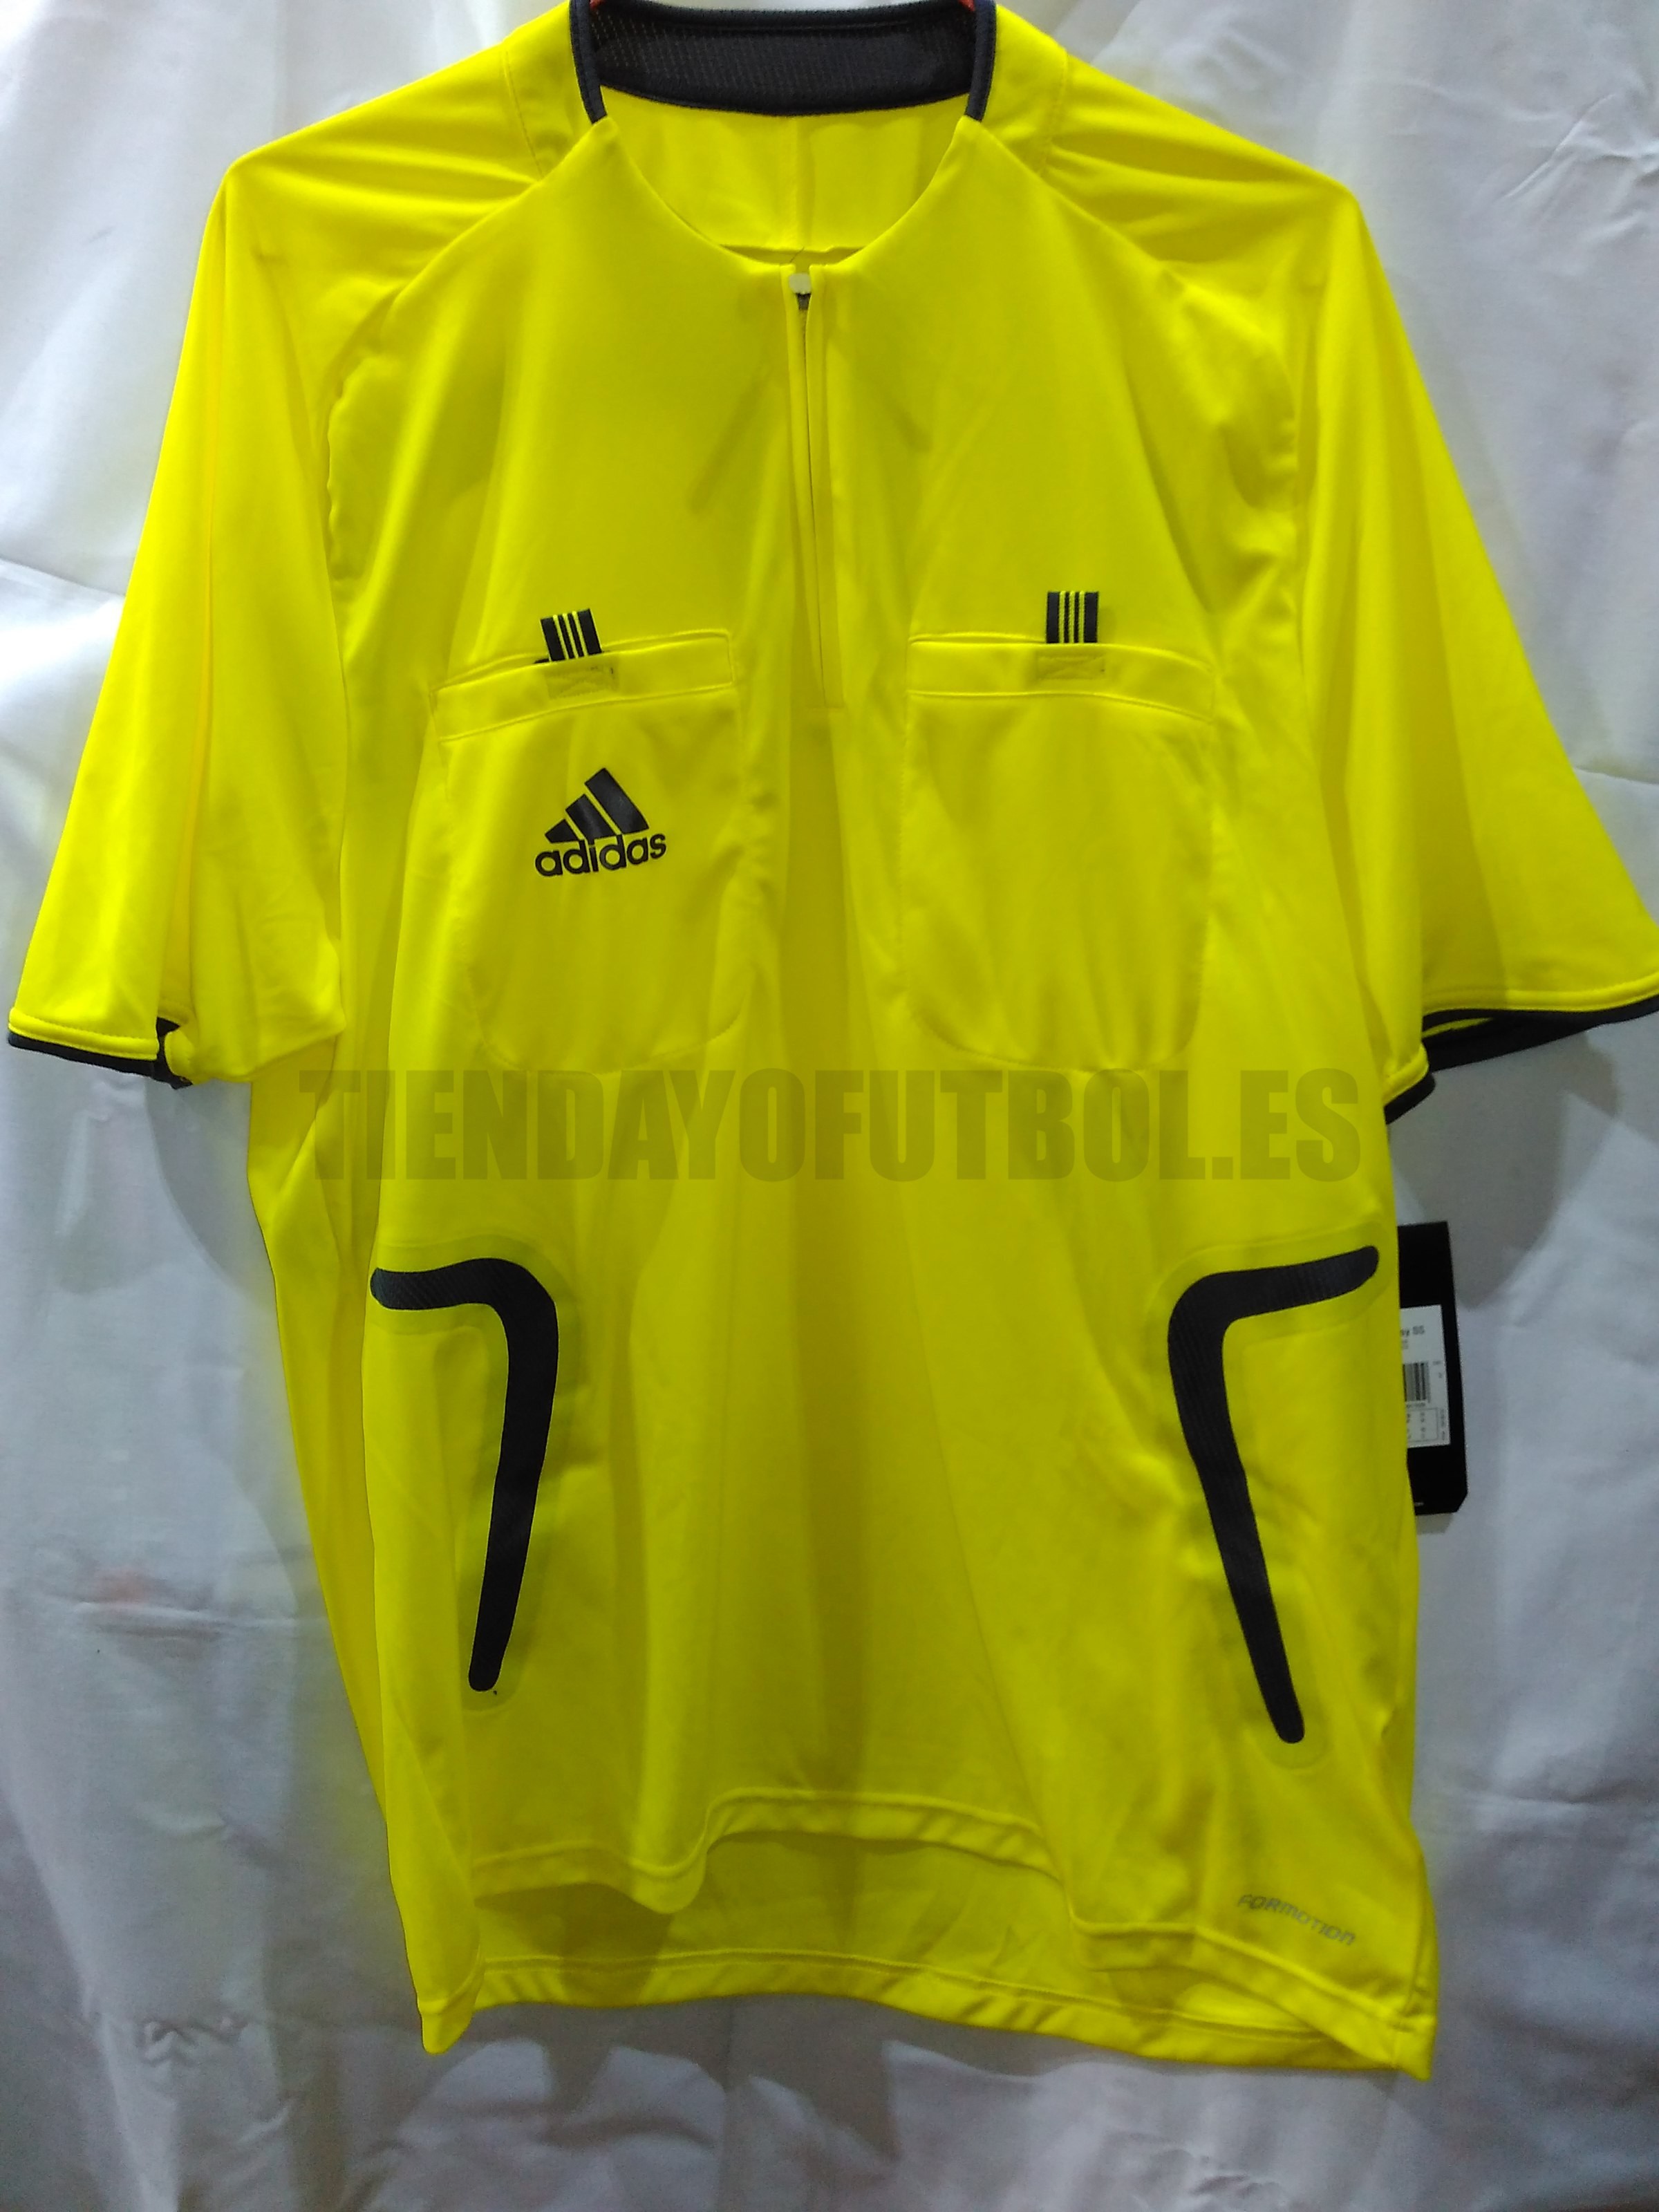 Deliberadamente Toro Sala Arbitro su Camiseta| Adidas camiseta Oficial Arbitro l Camiseta amarilla  arbitro de Futbol